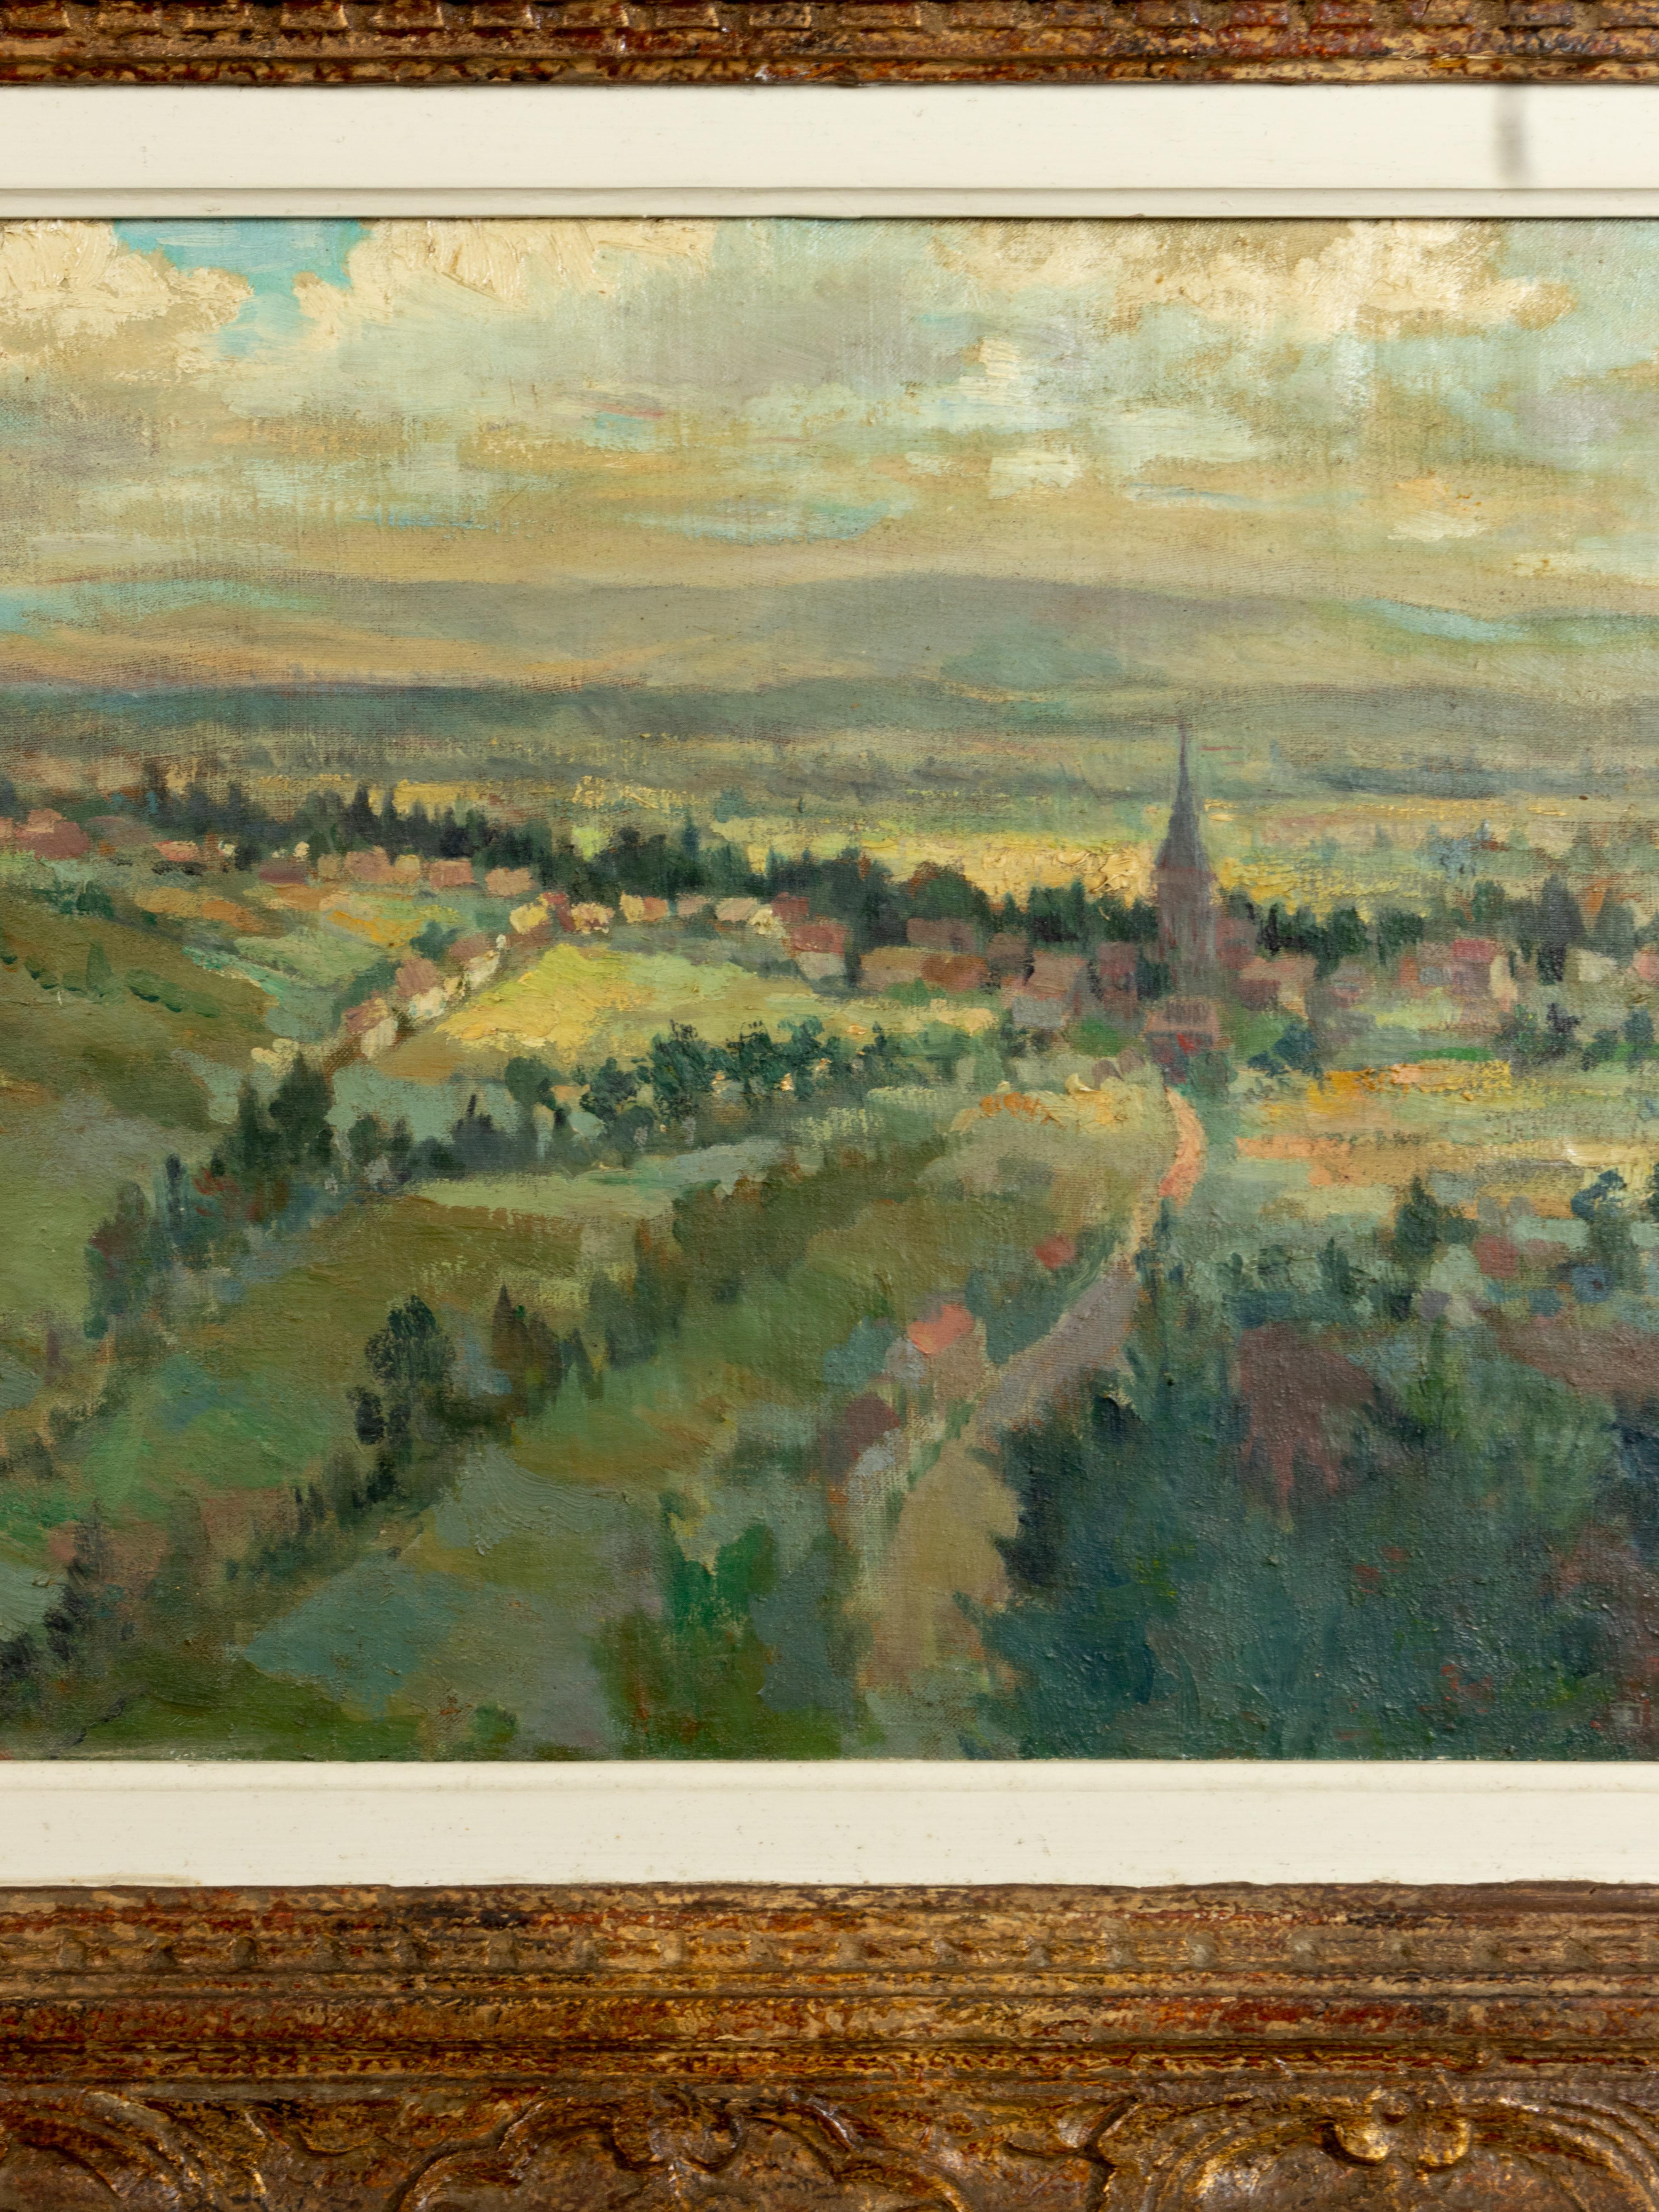 Une peinture de paysage dans la tradition du post-impressionnisme par l'artiste français Pierre Demet. 
Une vue panoramique d'une zone rurale, une petite ville française au loin et un vieux clocher.  
Huile sur toile.

